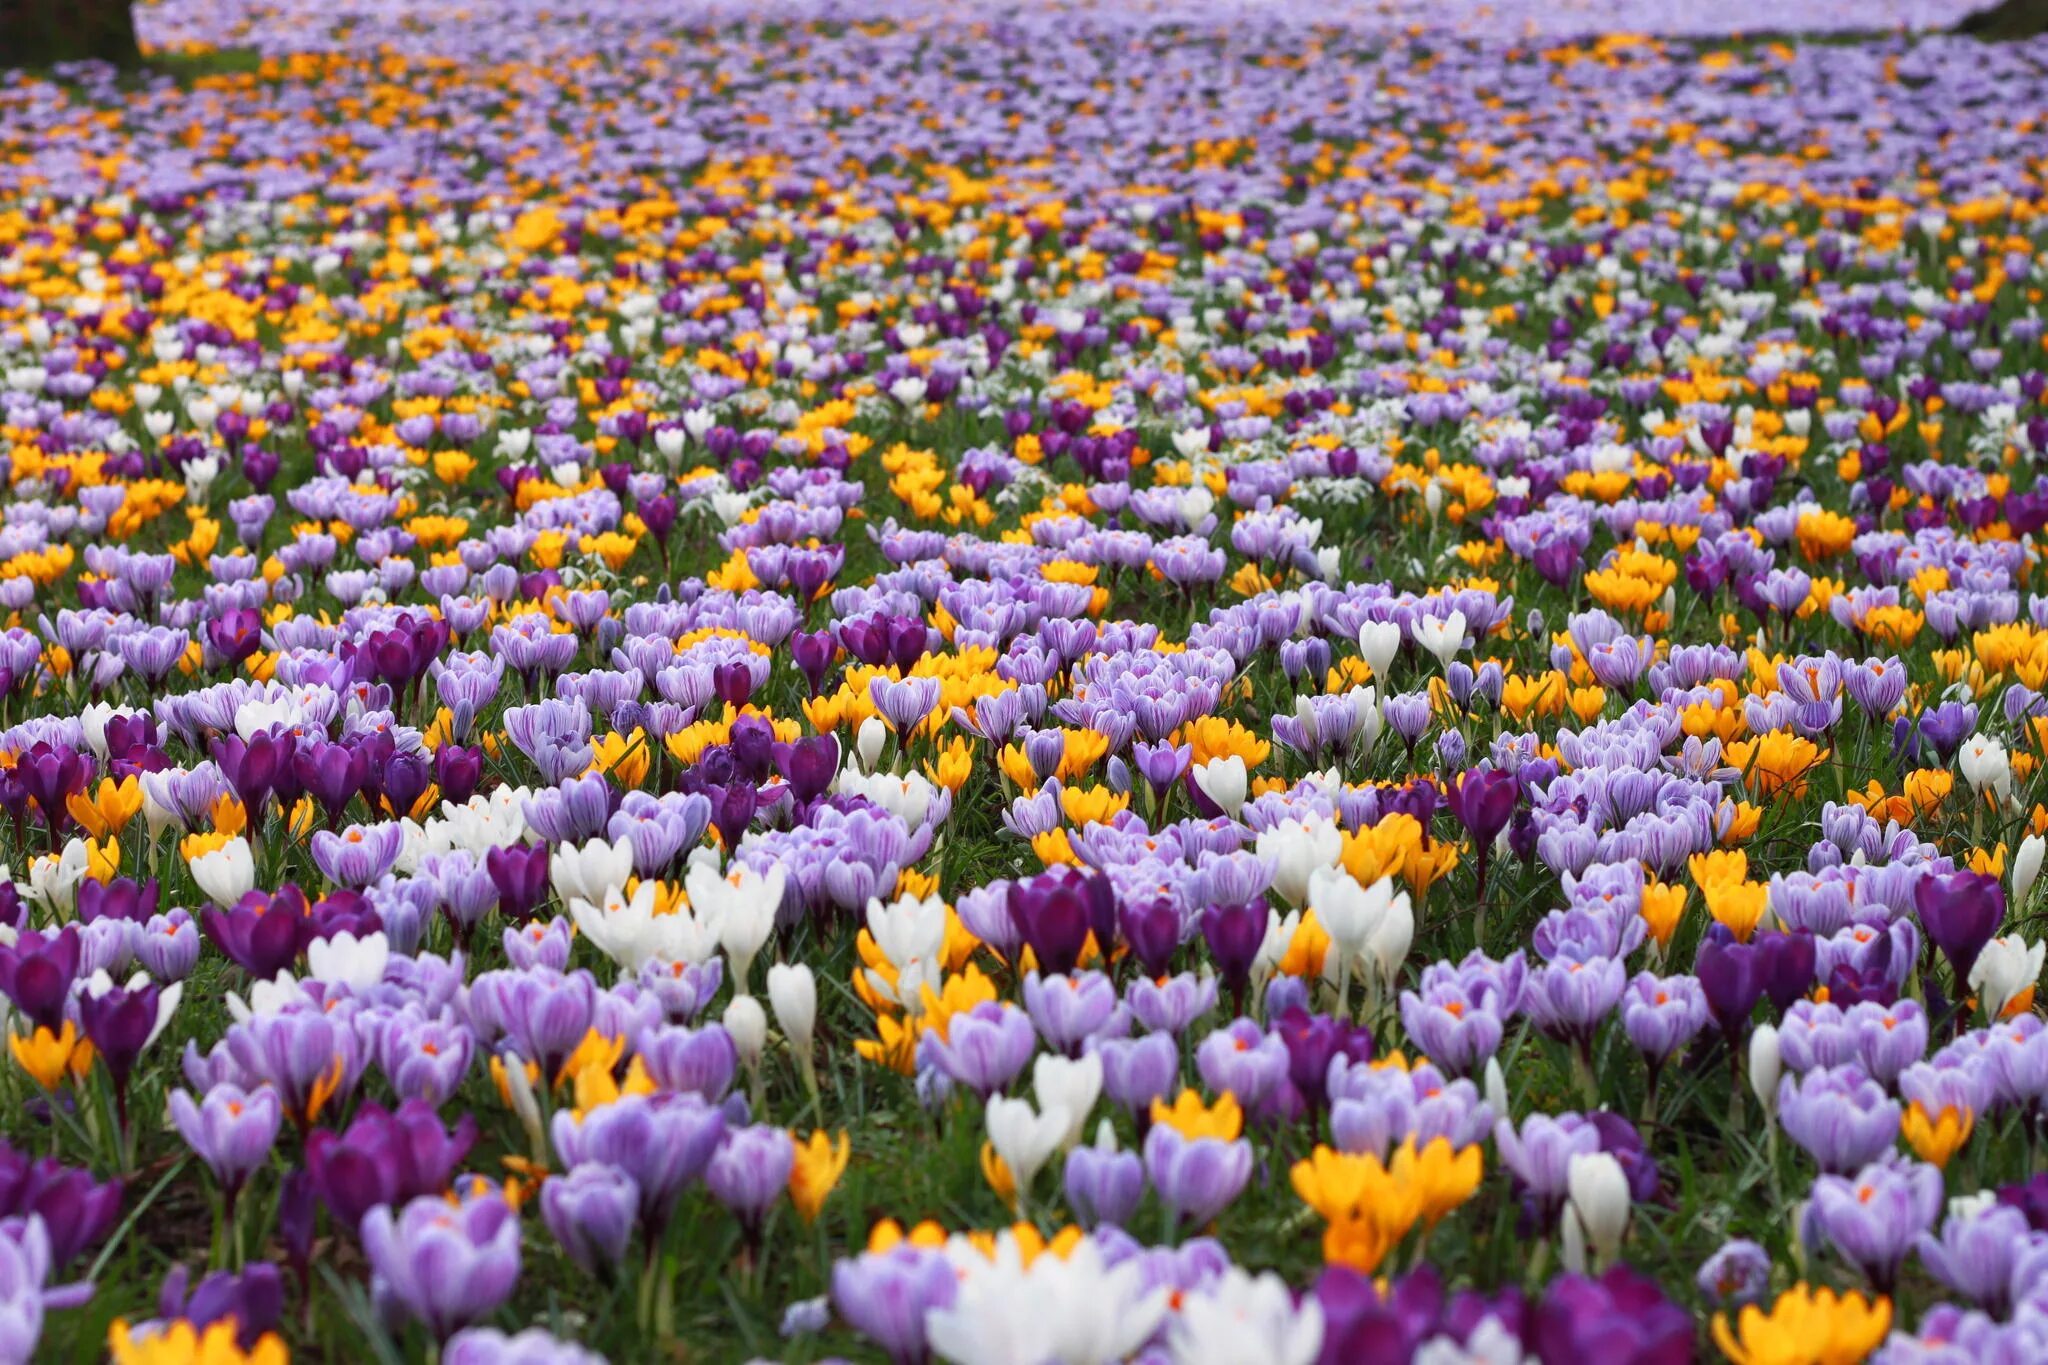 Цветы которые цветут в марте. Мавританский газон Очиток Крокус пролеска. Первоцветы (подснежники, крокусы, гиацинты).. Крокус Шафран весенний. Весенние первоцветы тюльпан.